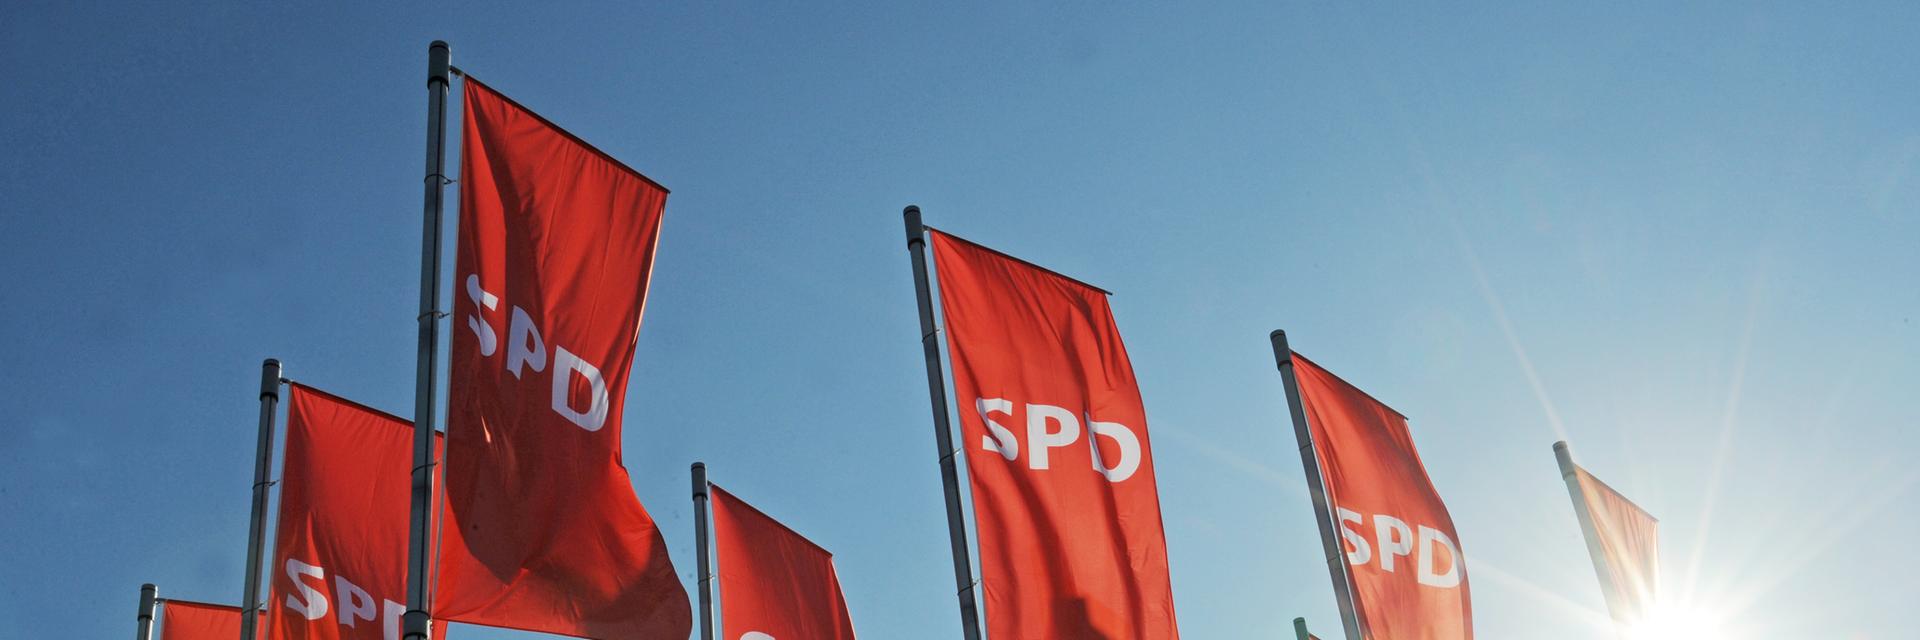 Rote Fahnen mit dem SPD Logo wehen vor einem Landesparteitag.